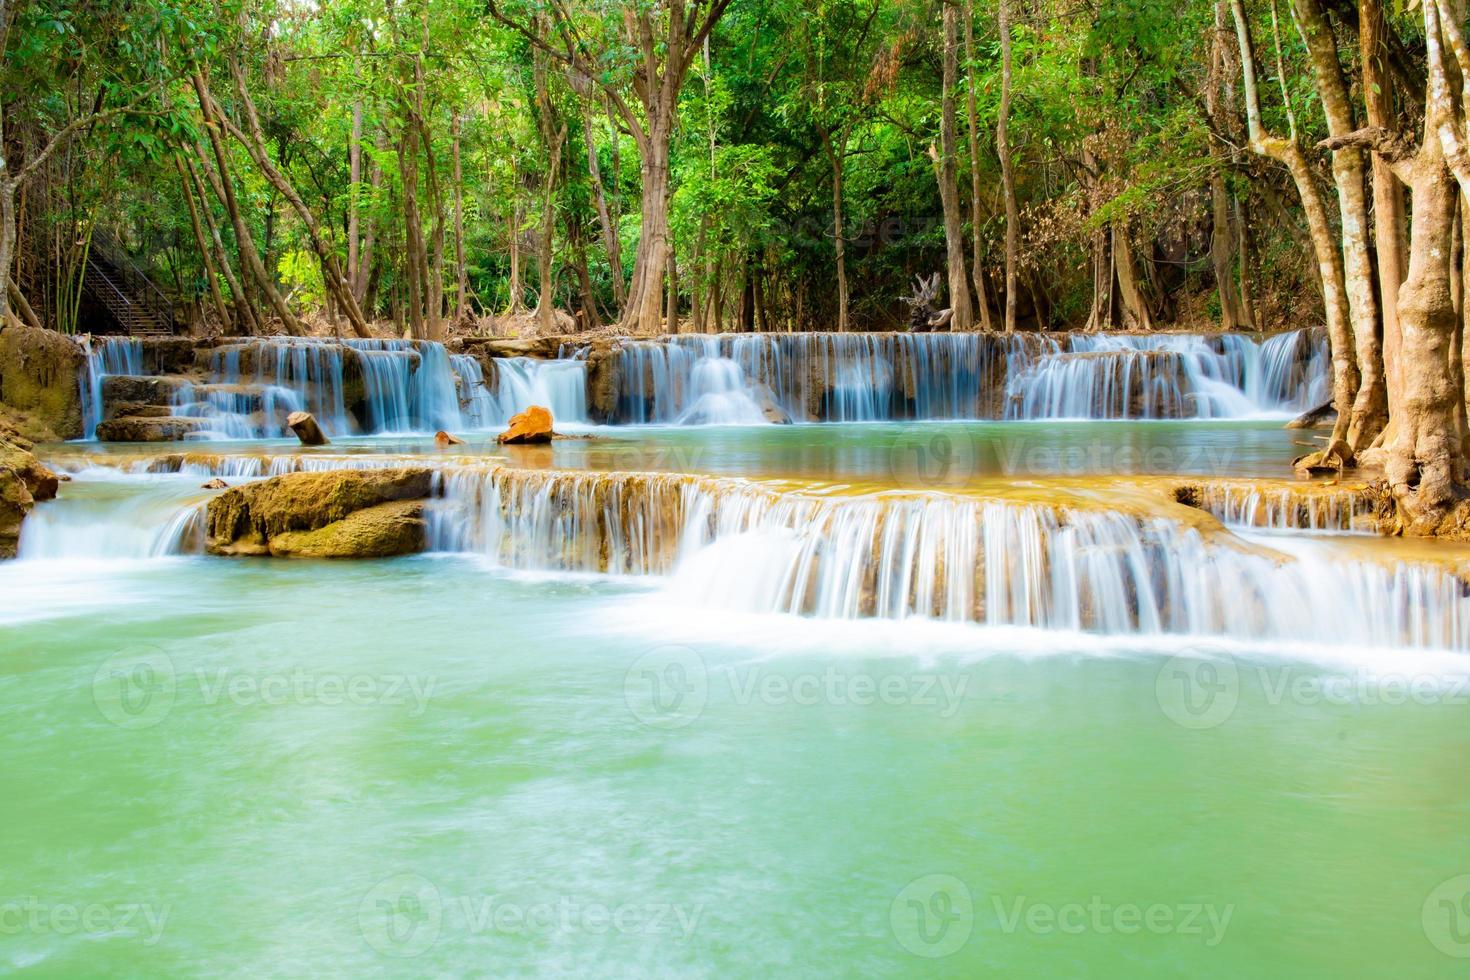 incroyable cascade colorée dans la forêt du parc national au printemps, belle forêt profonde en thaïlande, longue exposition technique, pendant les vacances et les moments de détente. photo